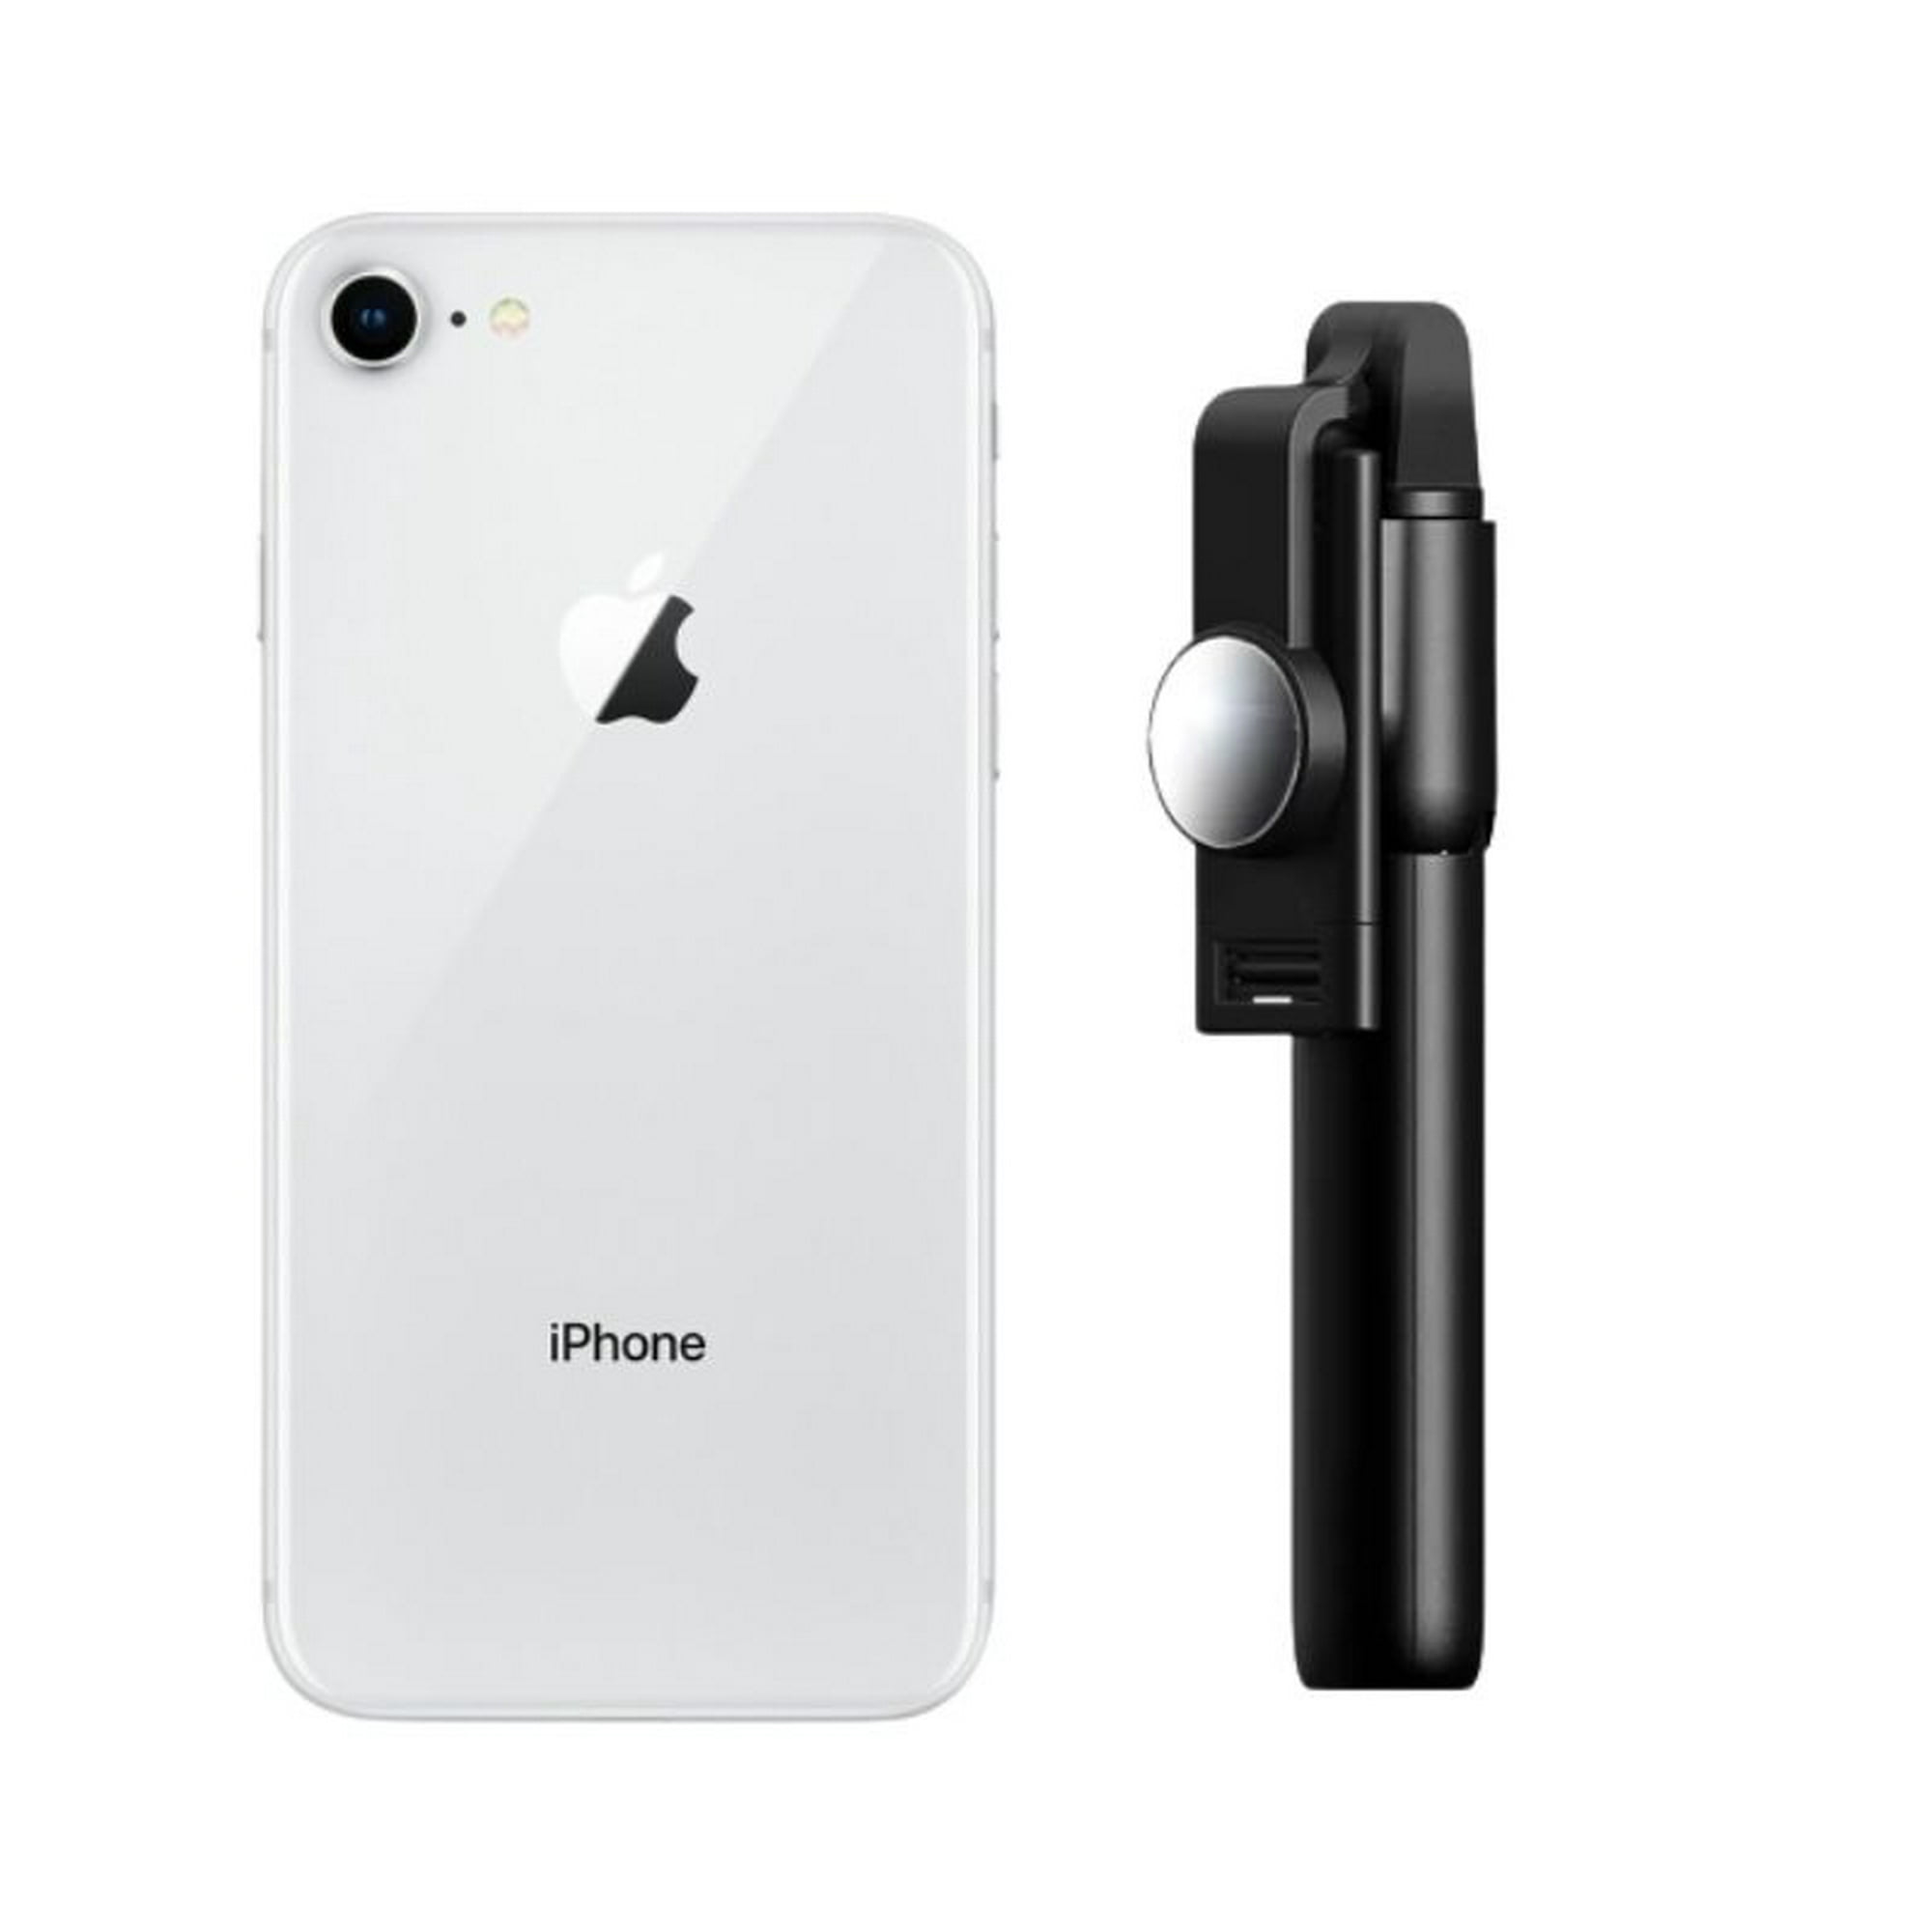 Smartphone iPhone 11 Pro Max Reacondicionado 256gb Gris + Estabilizador  Apple iPhone MWH12LL/A